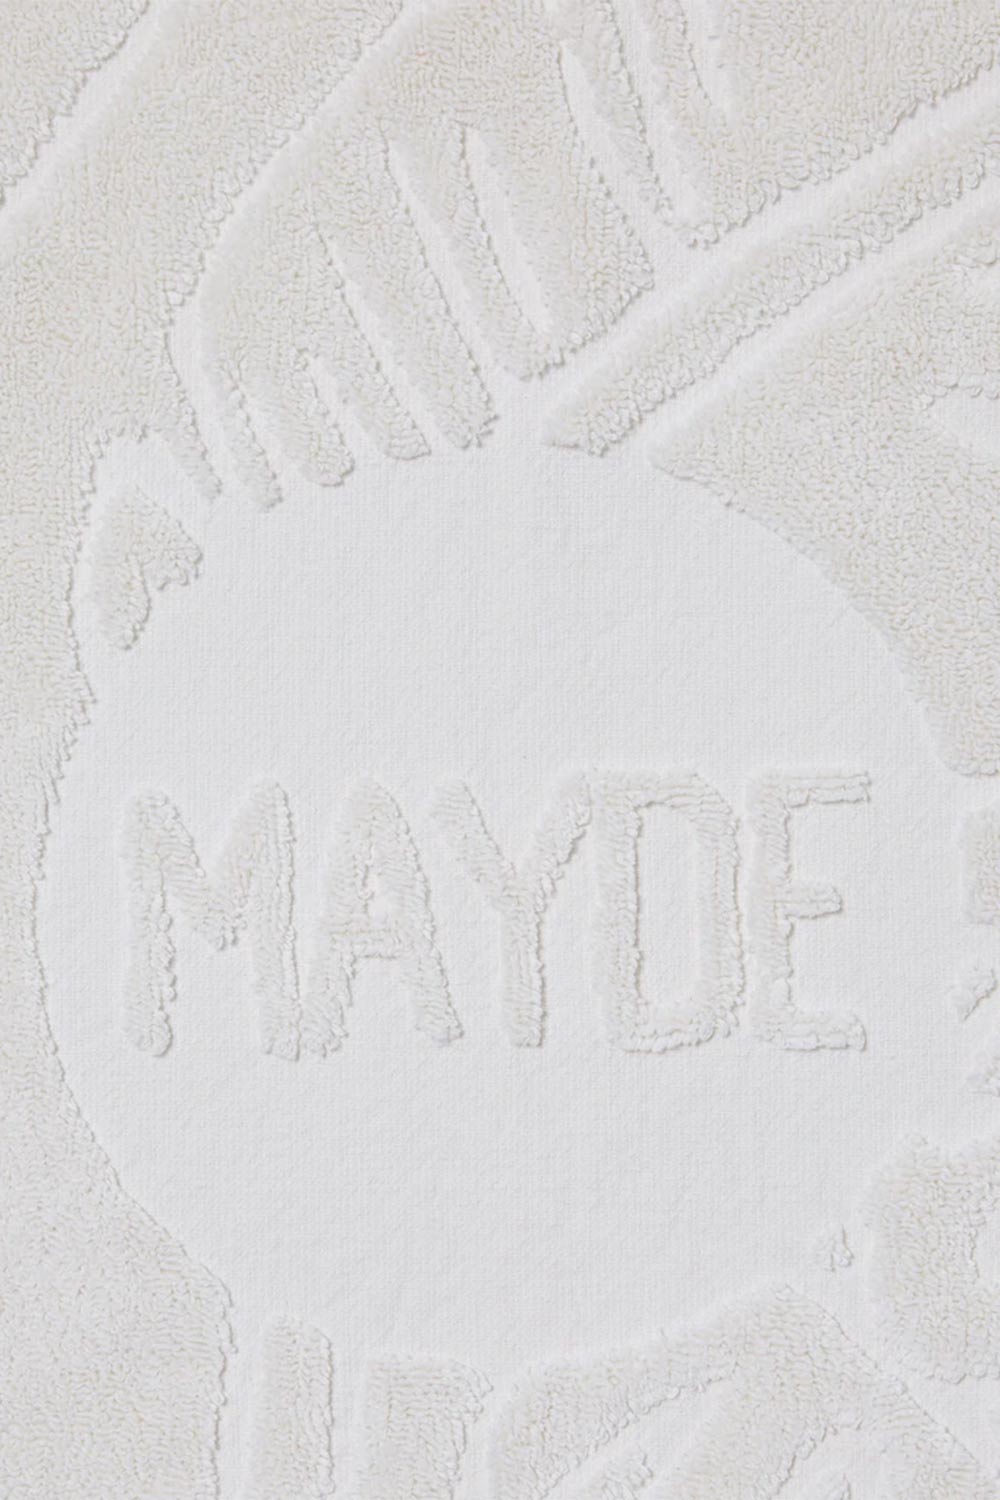 Mayde Beach Towels | Mayde Daintree Beach Towel - White